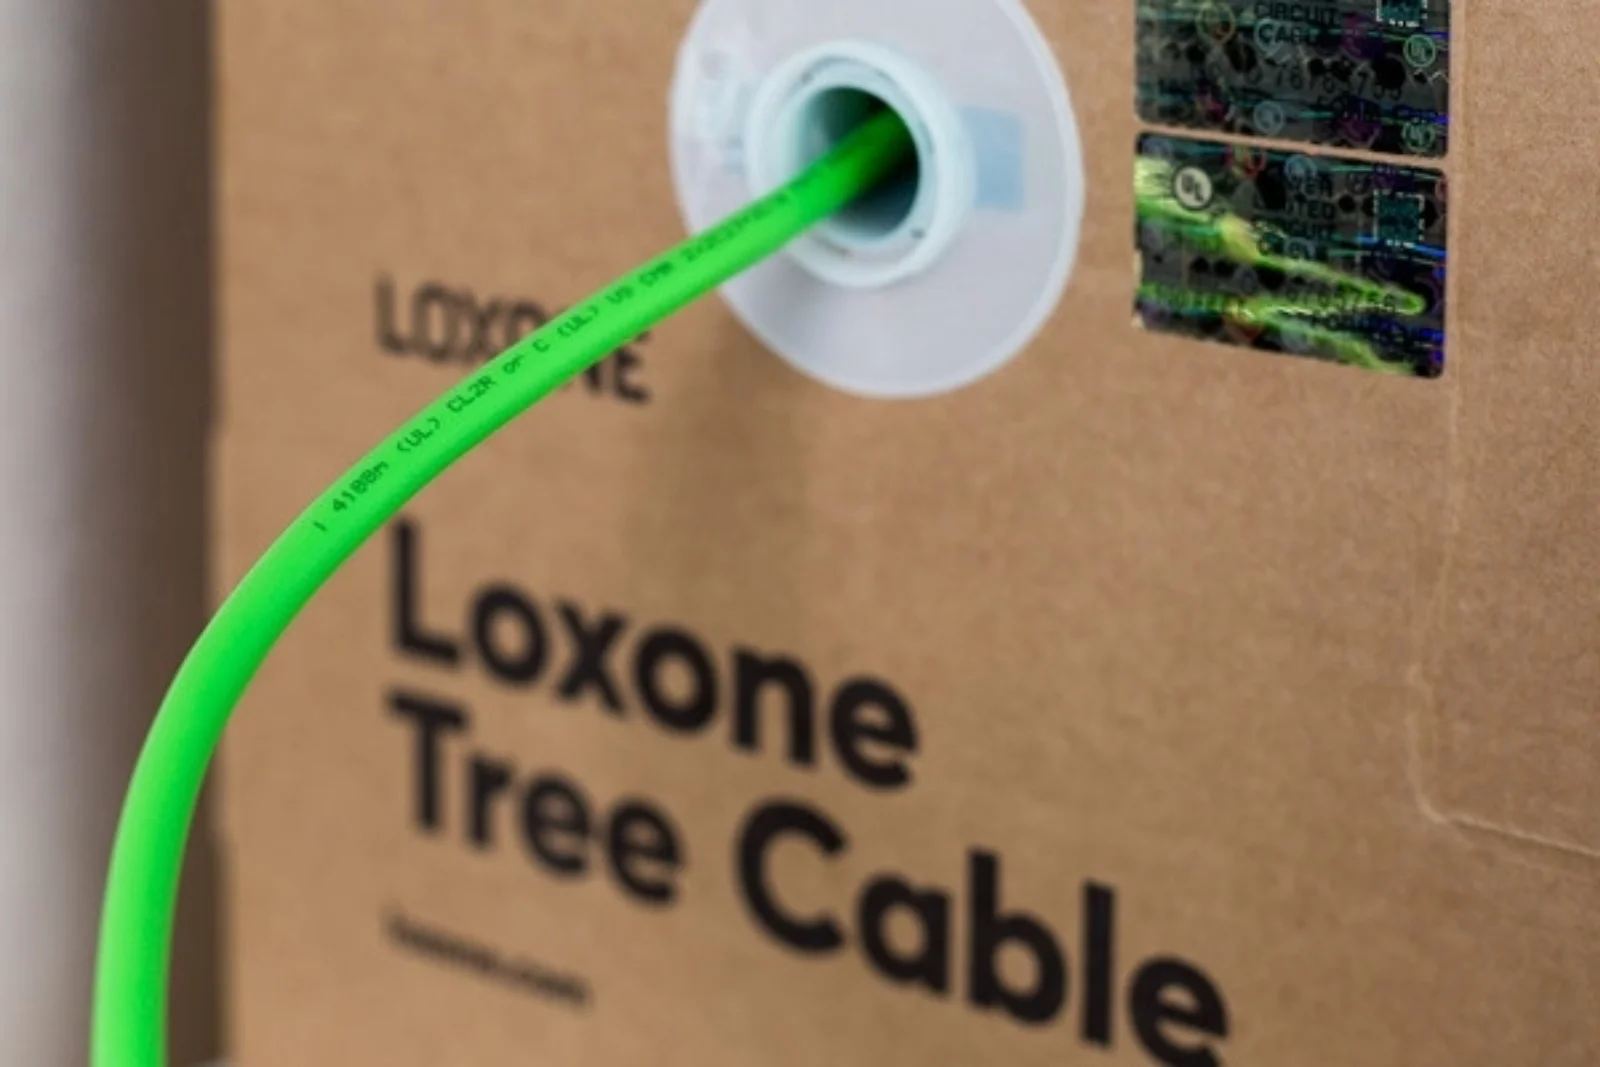 Loxone | Tree Kabel LSZH (200m)